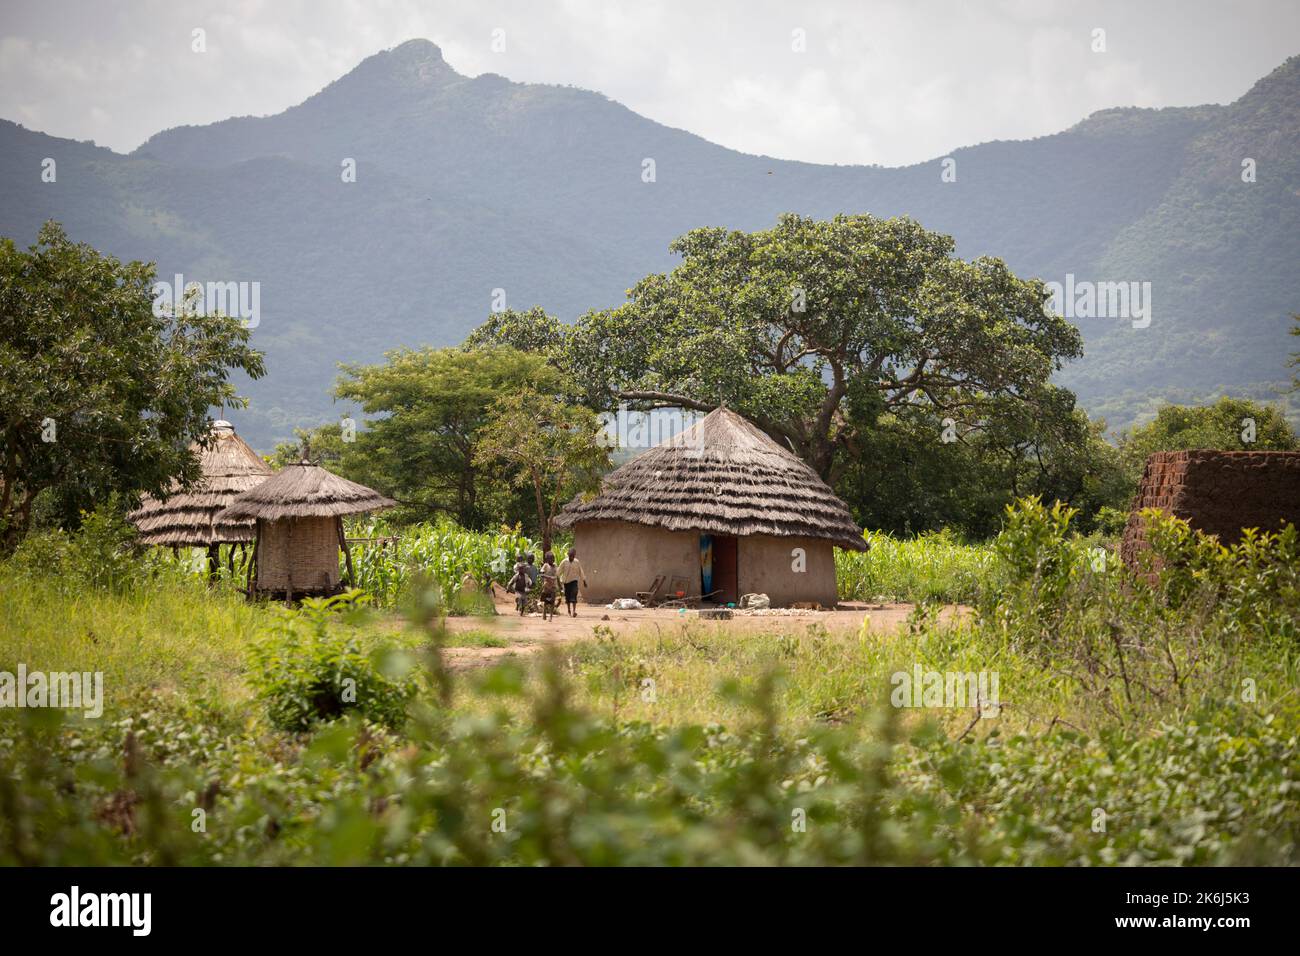 Wunderschöne Grasstrohschlammhäuser liegen in einem Tal unter den Hügeln und Bergen des Distrikts Abim, Uganda, Ostafrika. Stockfoto